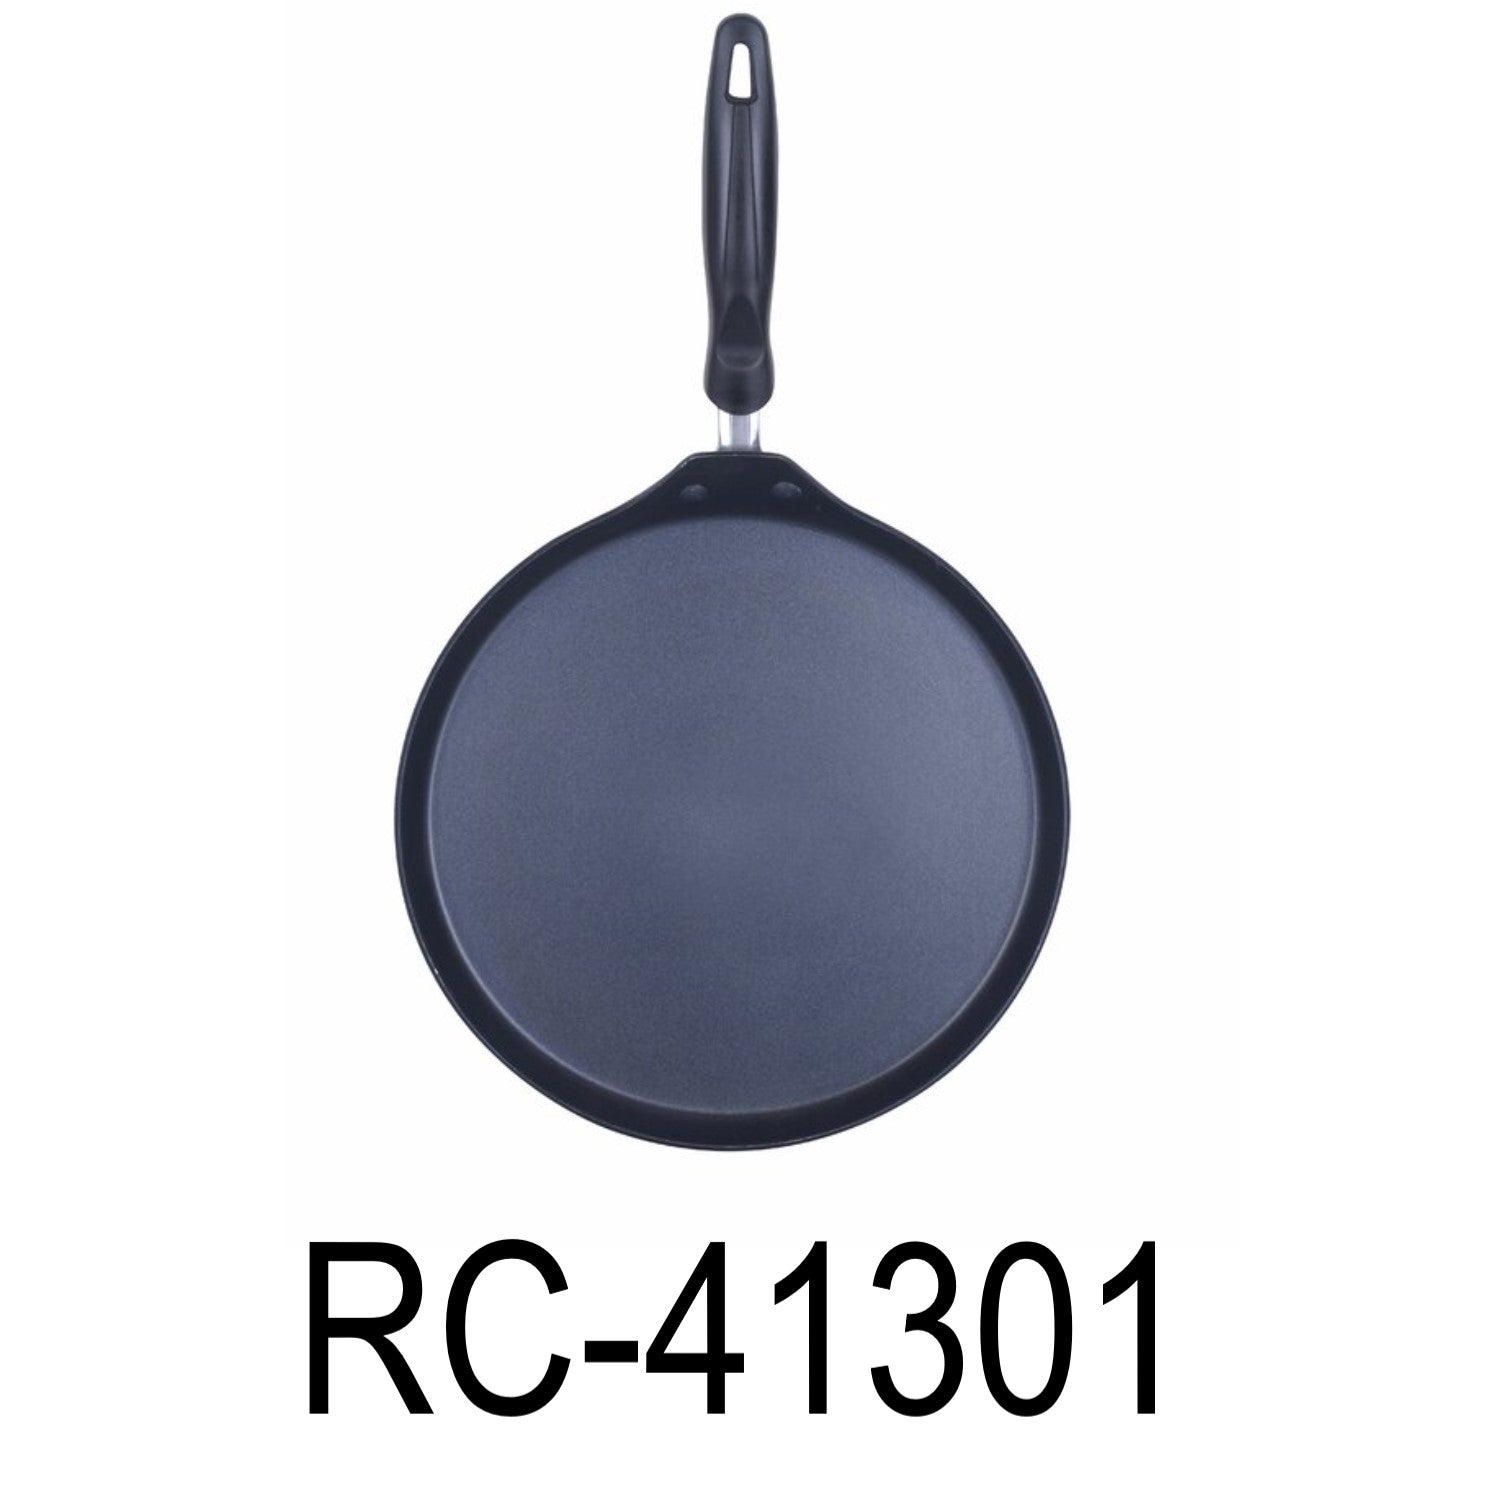 http://www.randbimport.com/cdn/shop/products/Royal_Cook_Aluminum_Non-Stick_Griddle_54f263b1-bf93-4f9c-842a-3a6dd594f76e.jpg?v=1652393237